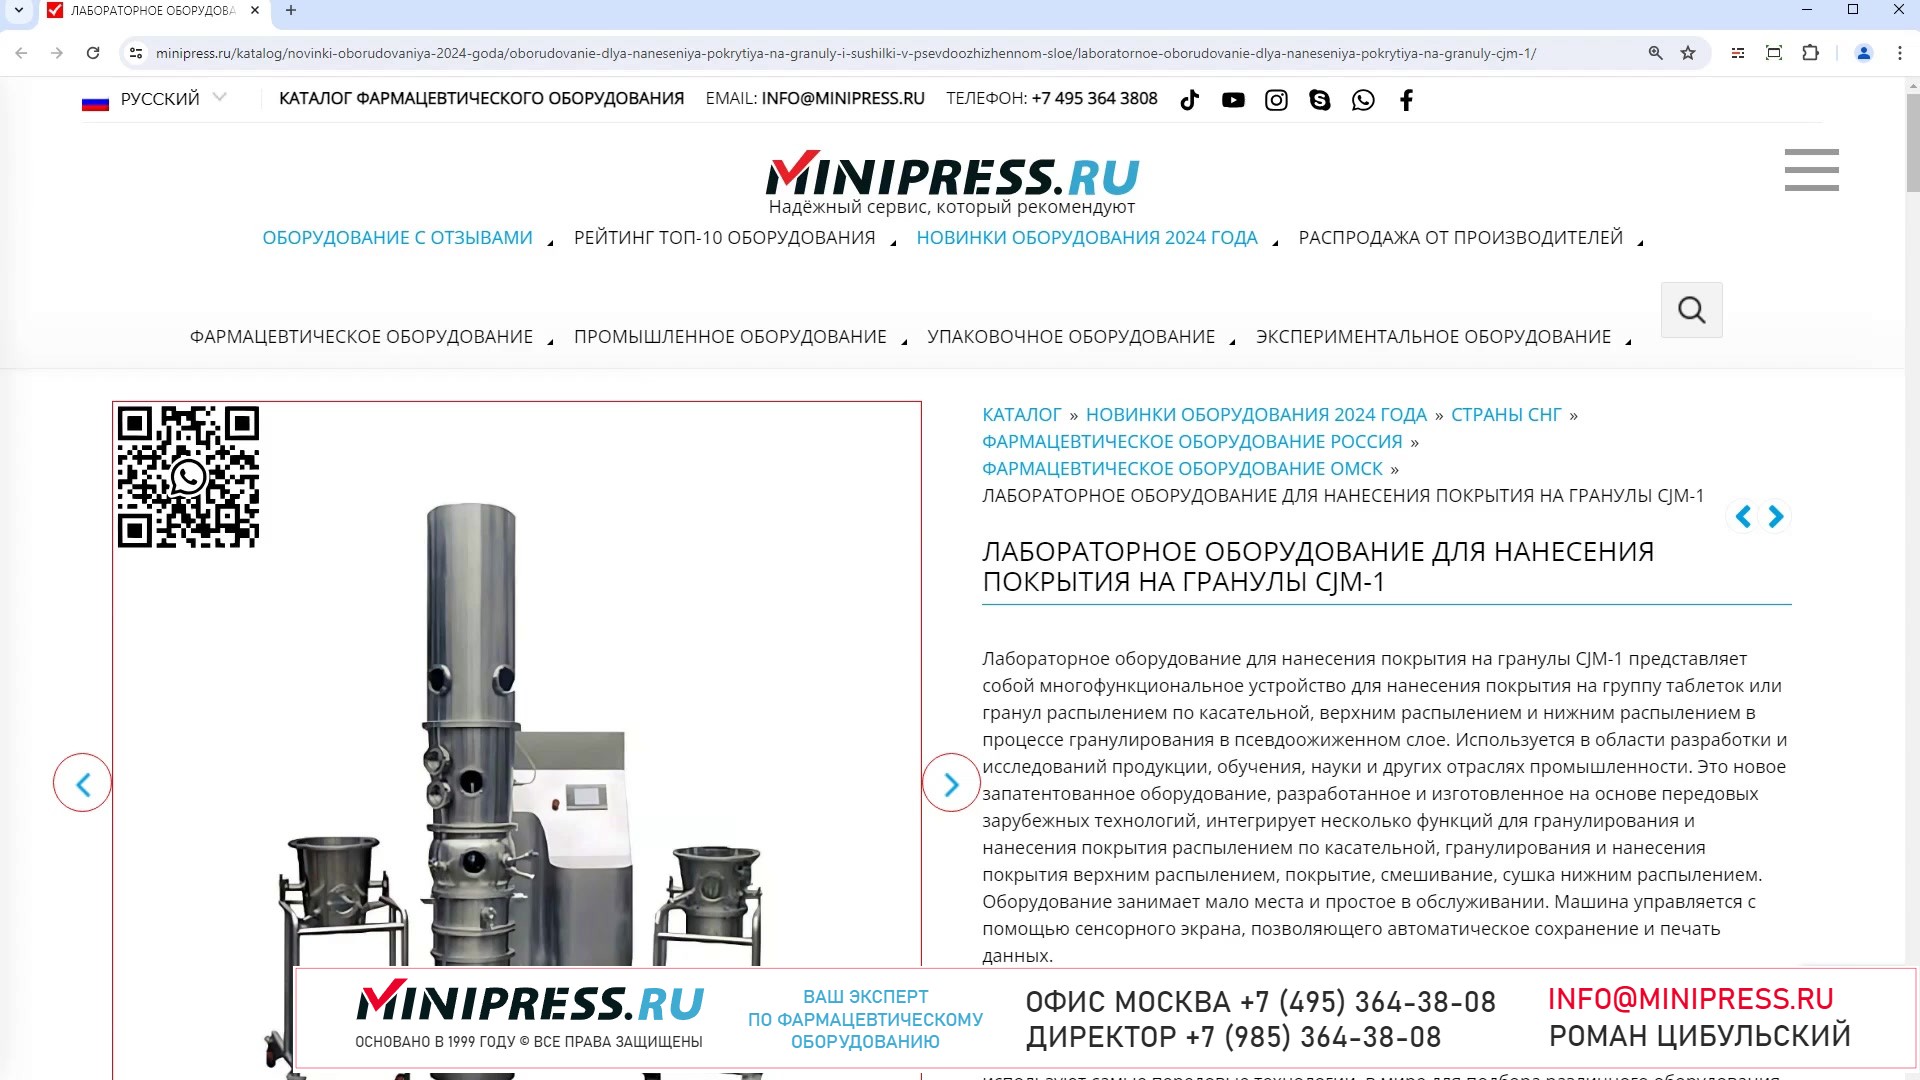 Minipress.ru Лабораторное оборудование для нанесения покрытия на гранулы CJM-1